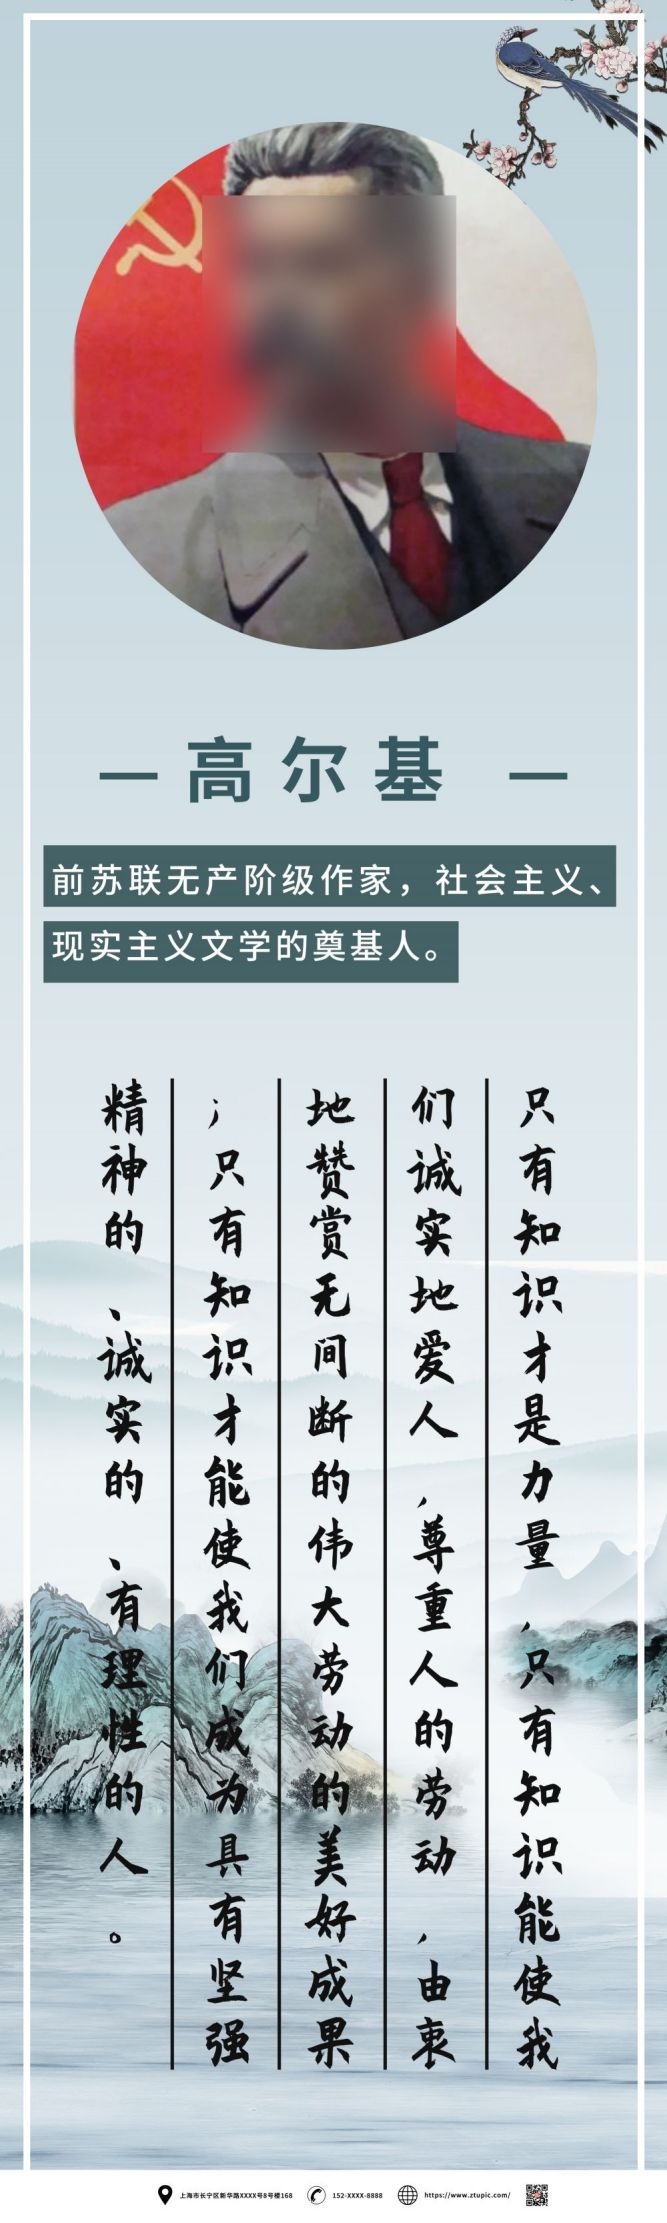 学校校园文化中国风复古名人名言挂画海报 (87)